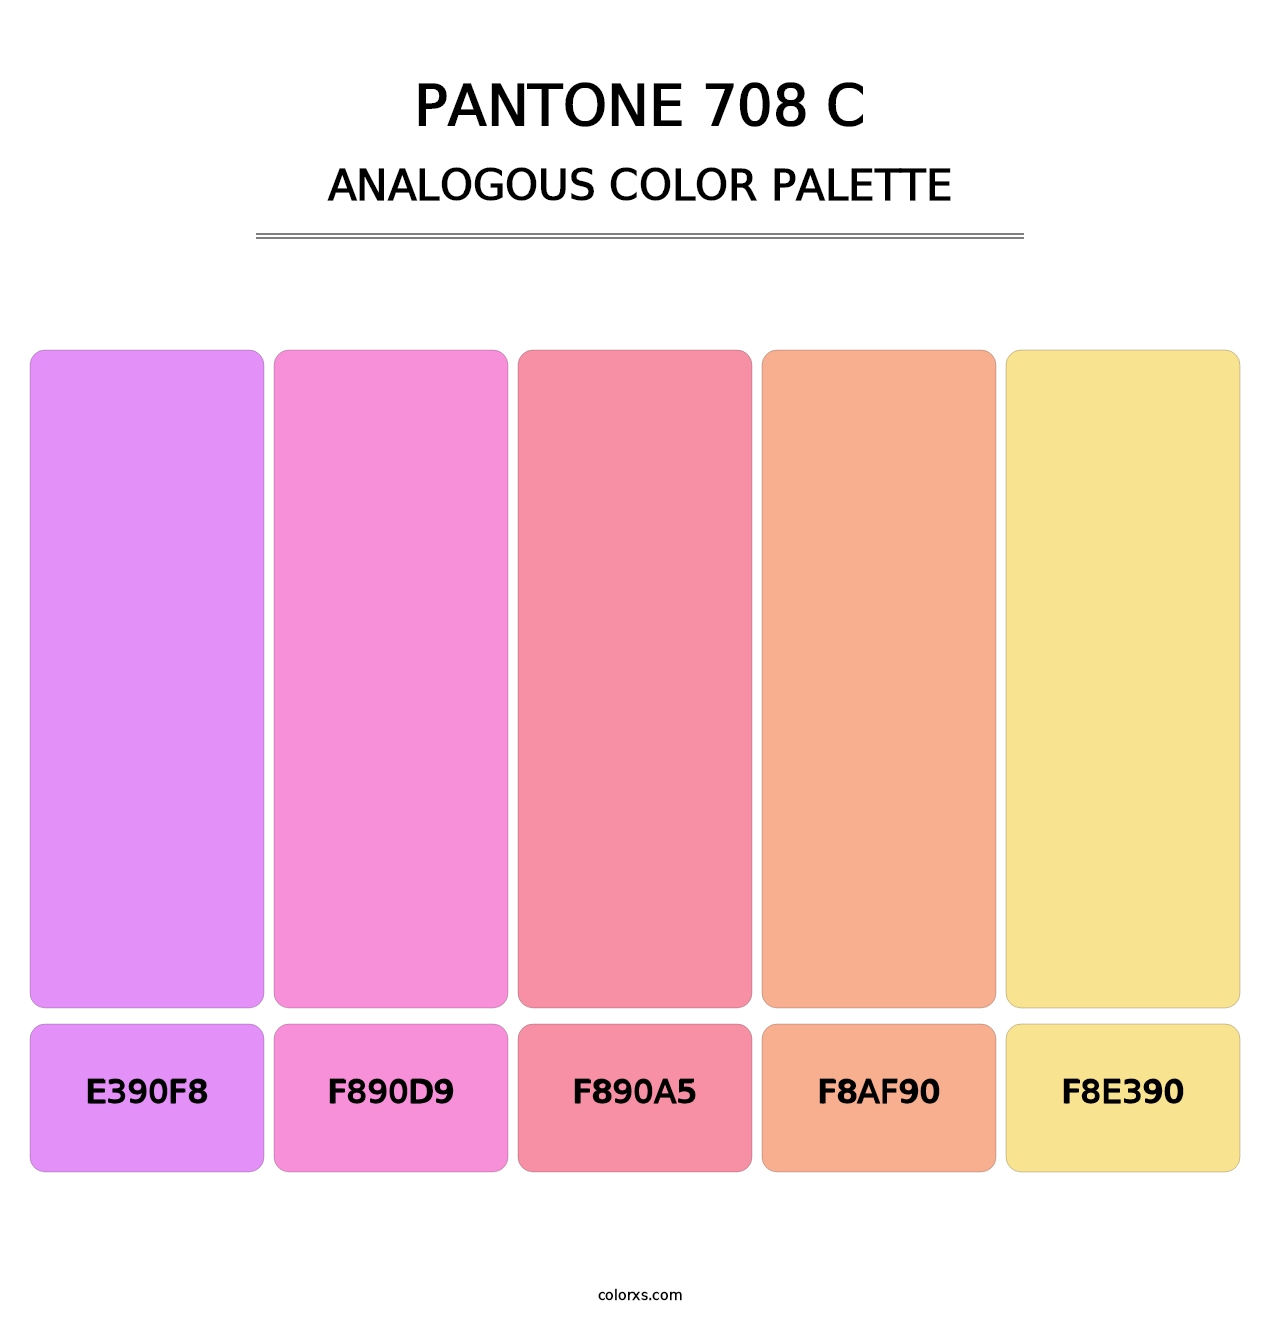 PANTONE 708 C - Analogous Color Palette